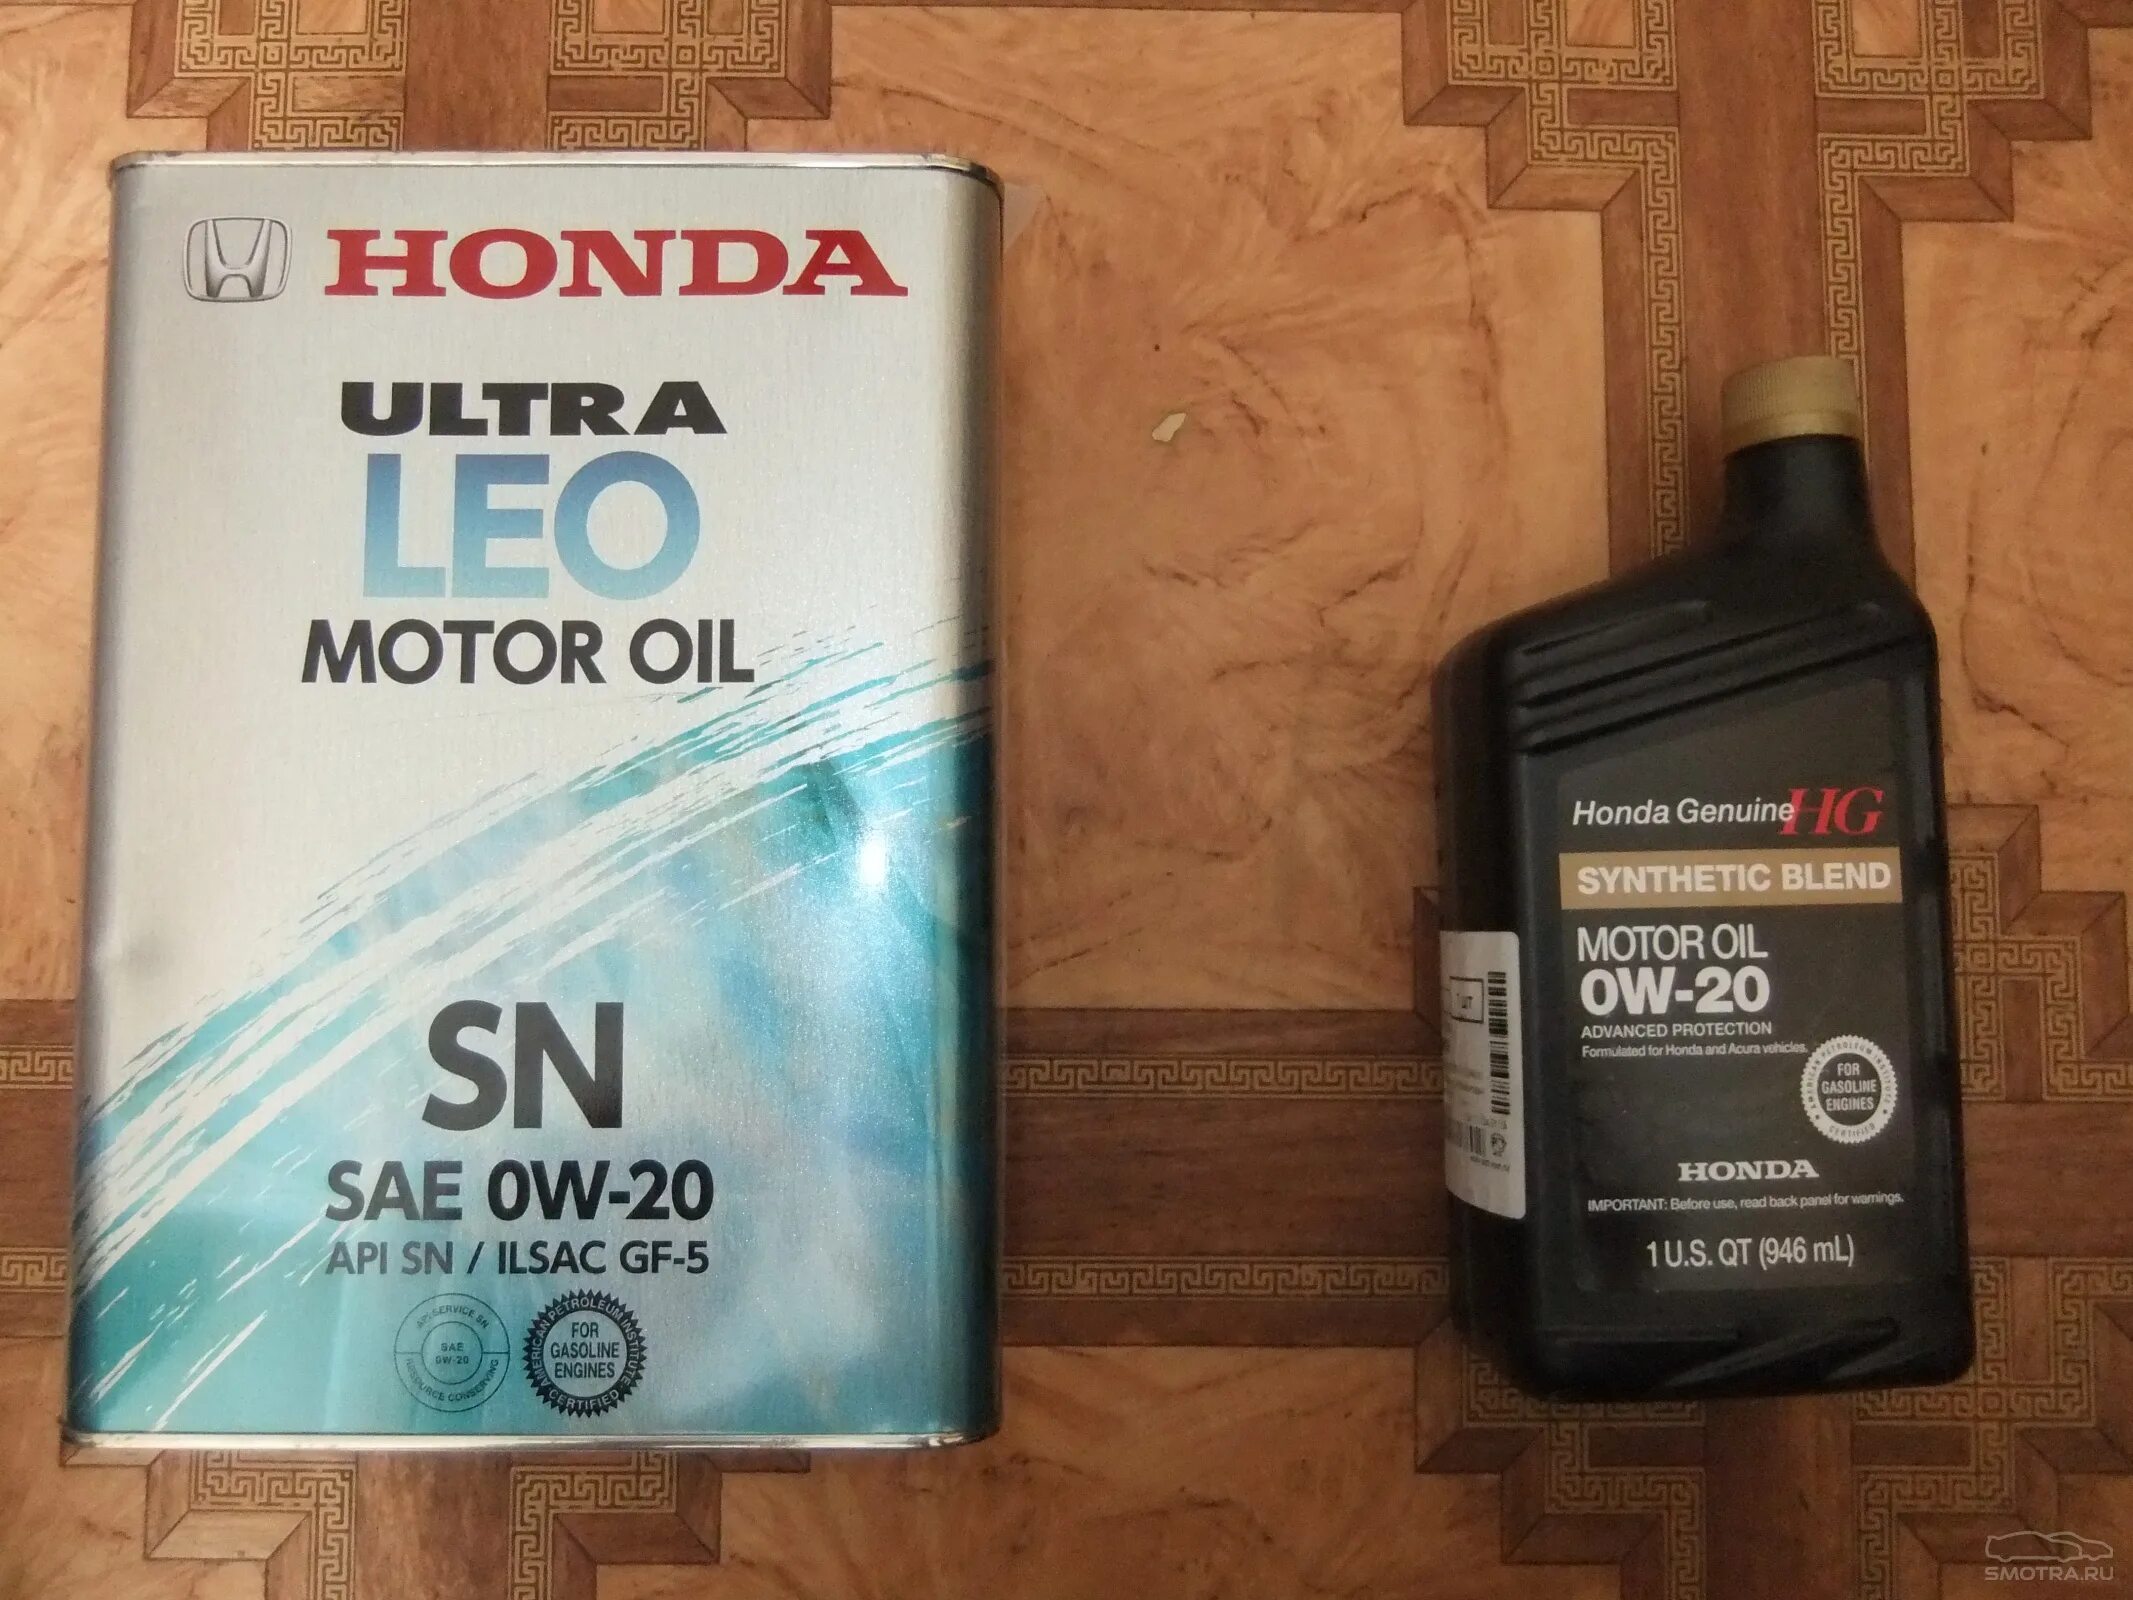 Масло срв 1. Оригинальное масло Хонда 0w20. Моторное масло Honda CR-V 2013. Honda CR-V 2.0 мотор масла. Honda Synthetic Blend 5w30.